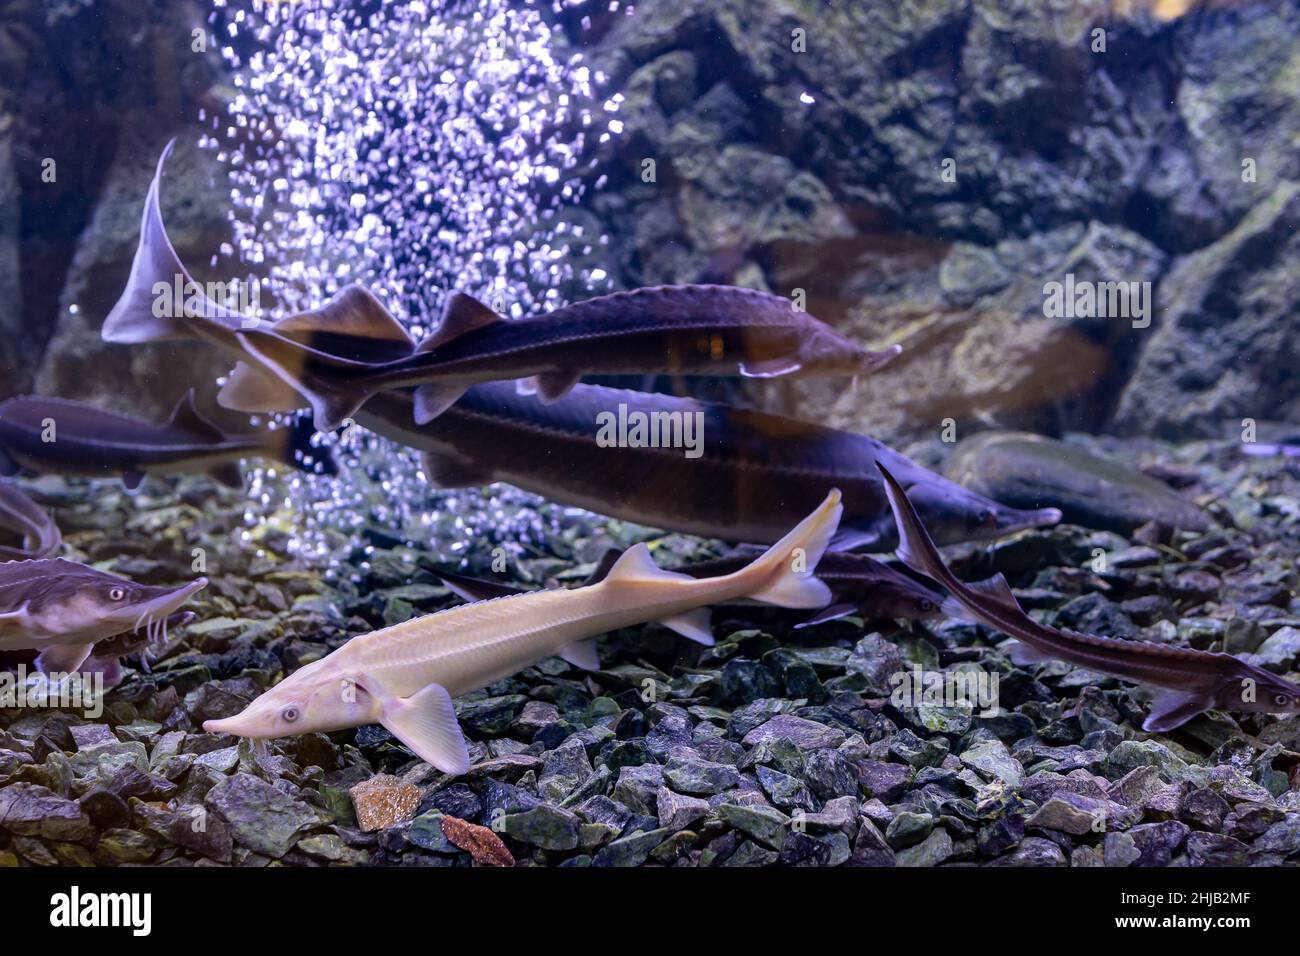 sturgeon fish in the aquarium. White sturgeon Stock Photo